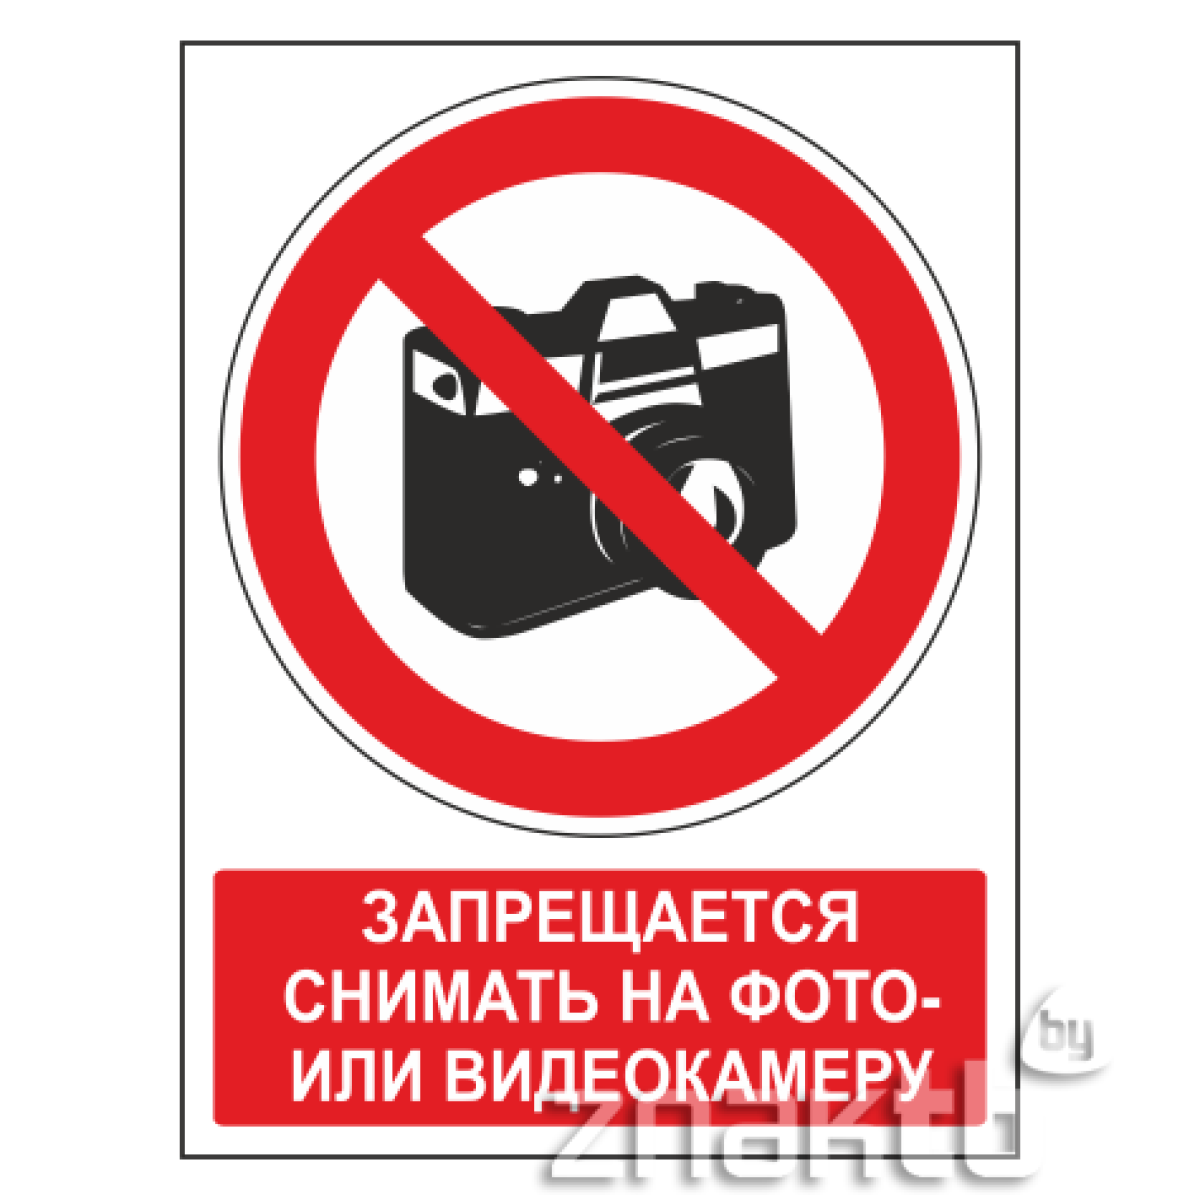 Знак Запрещается снимать на фото- или видеокамеру (с поясняющей надписью)